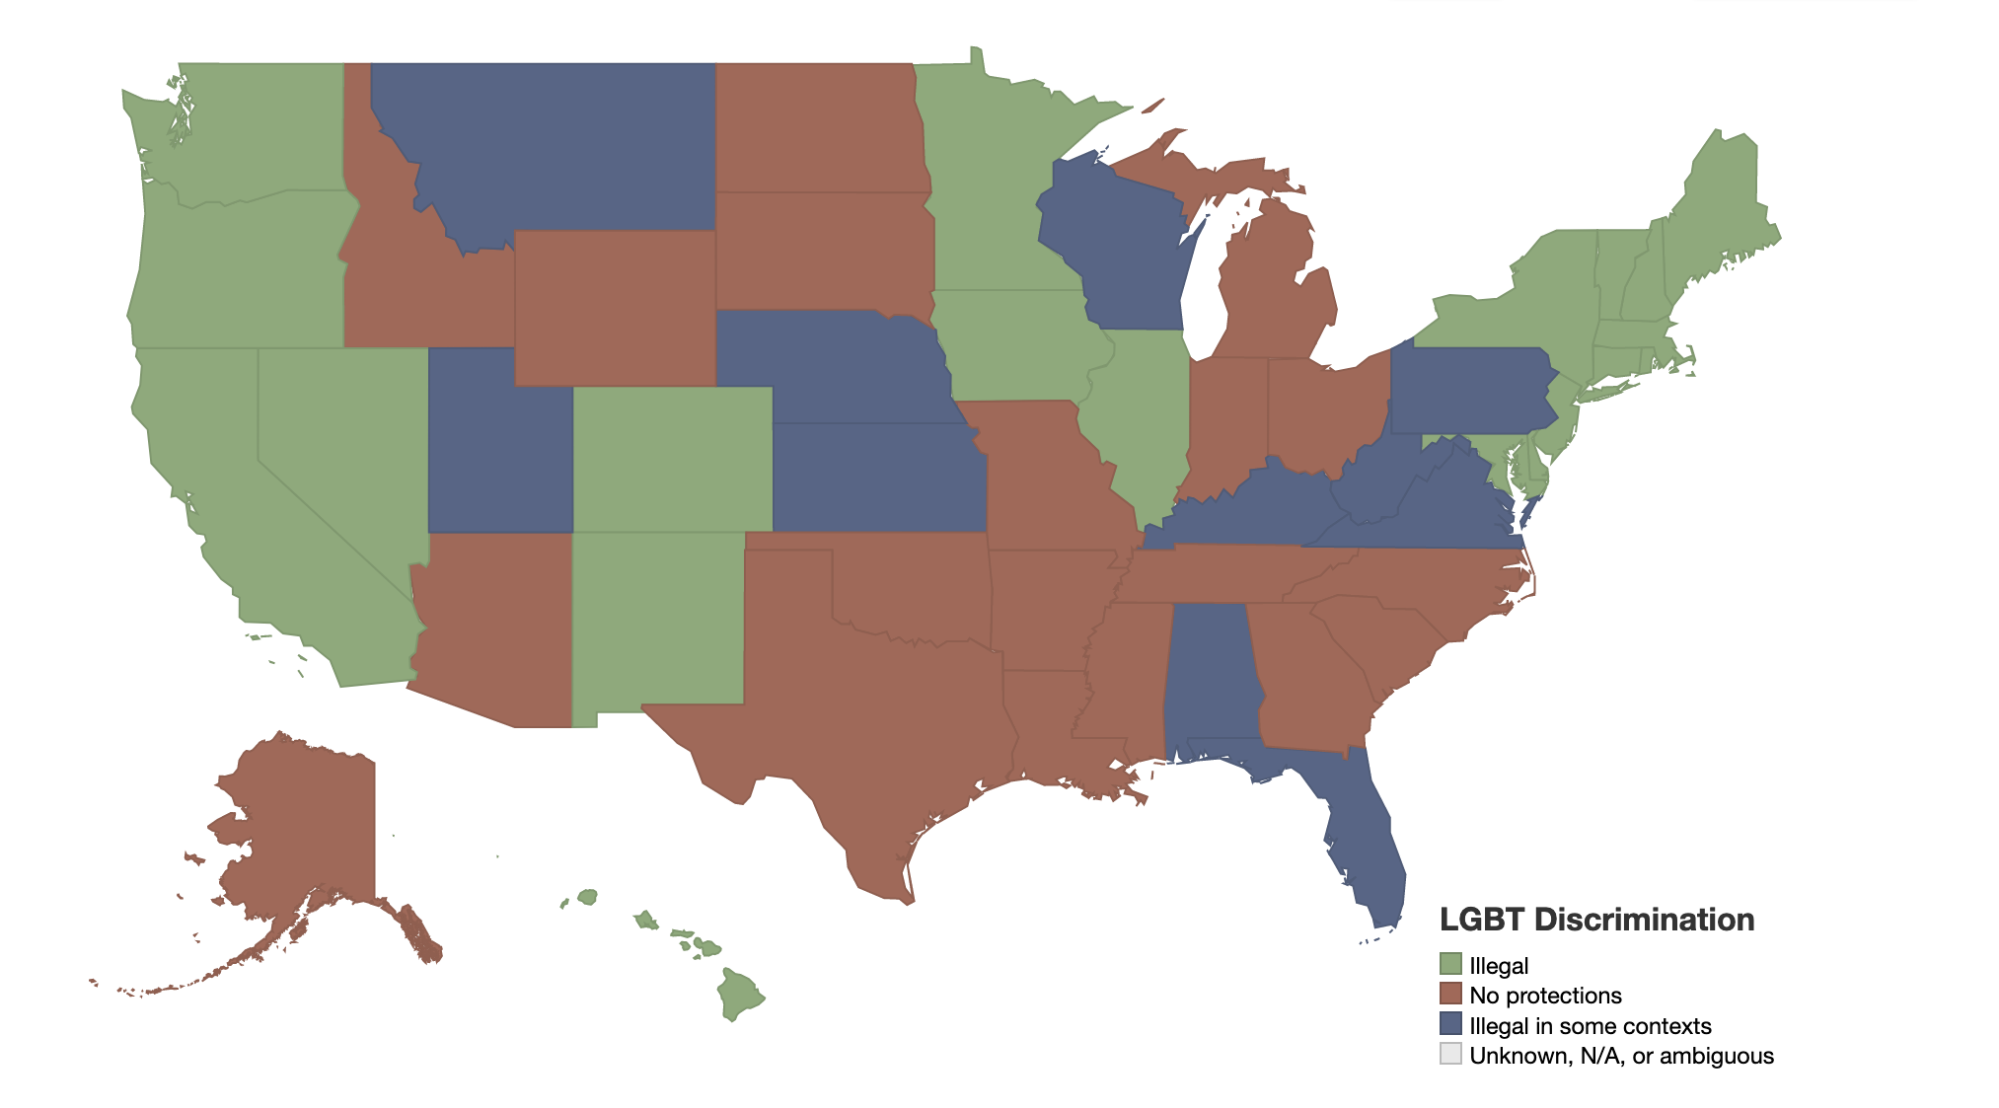 event-location-inclusivity-US-discrimination-index